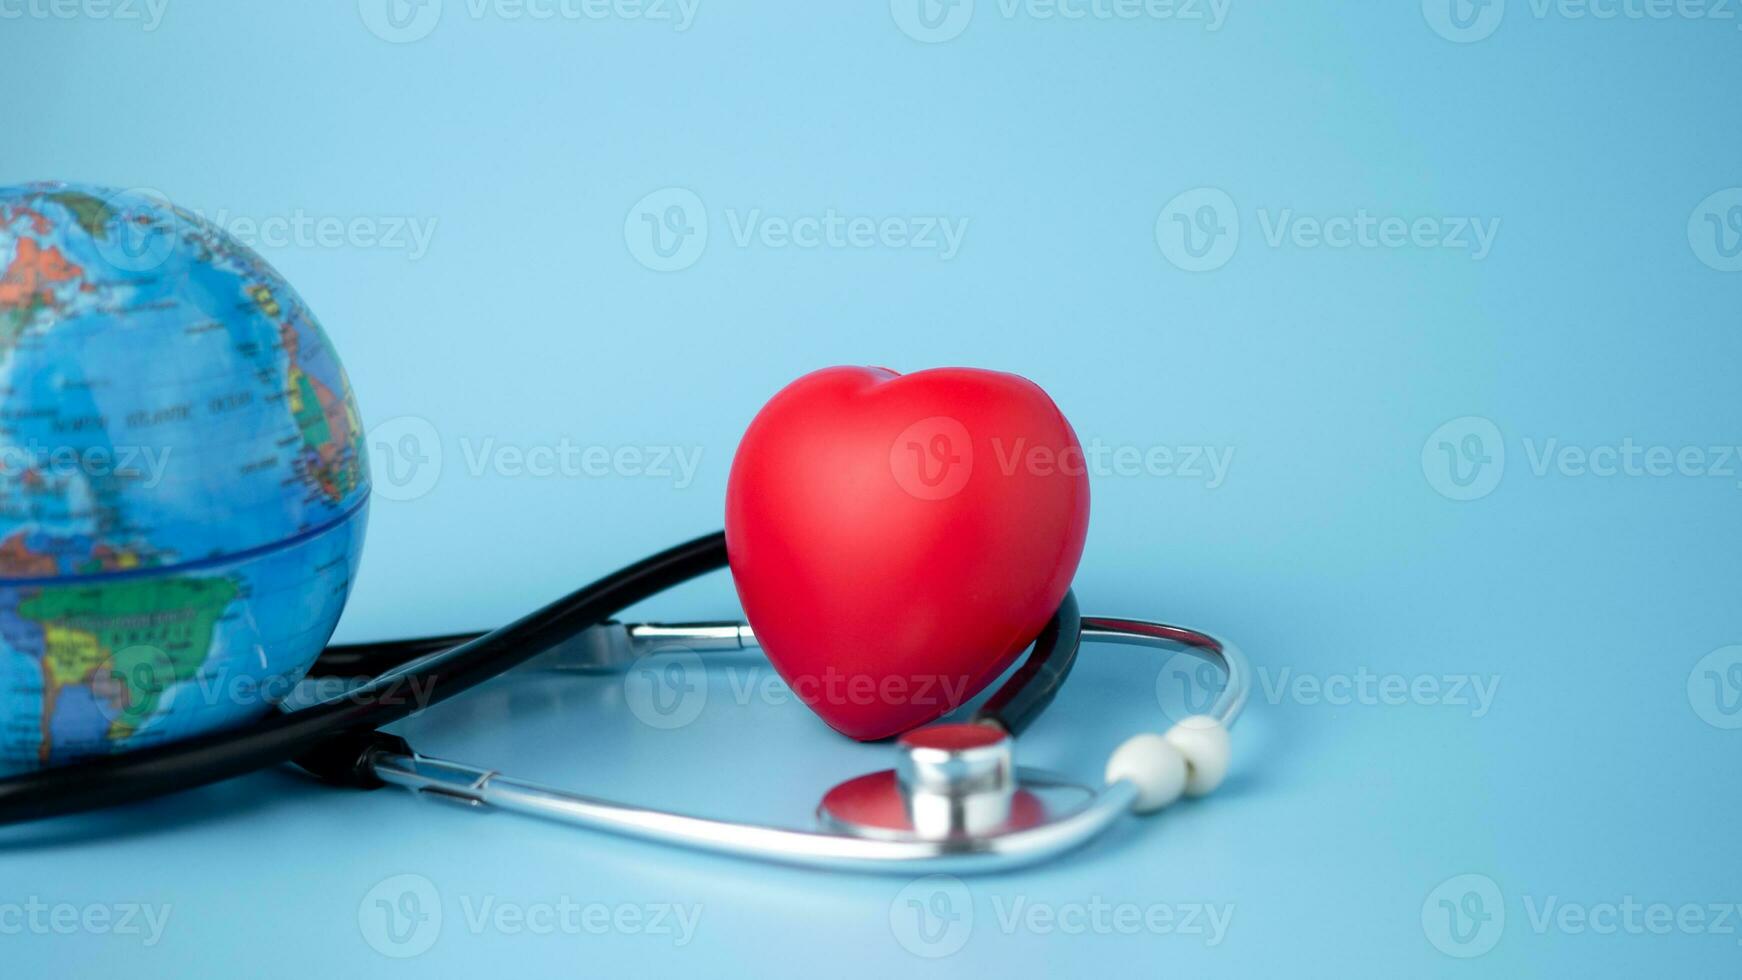 begrepp av hälsa försäkring och medicinsk välfärd, modell klot och röd hjärta med stetoskop på blå bakgrund, hälsa försäkring och tillgång till sjukvård. foto